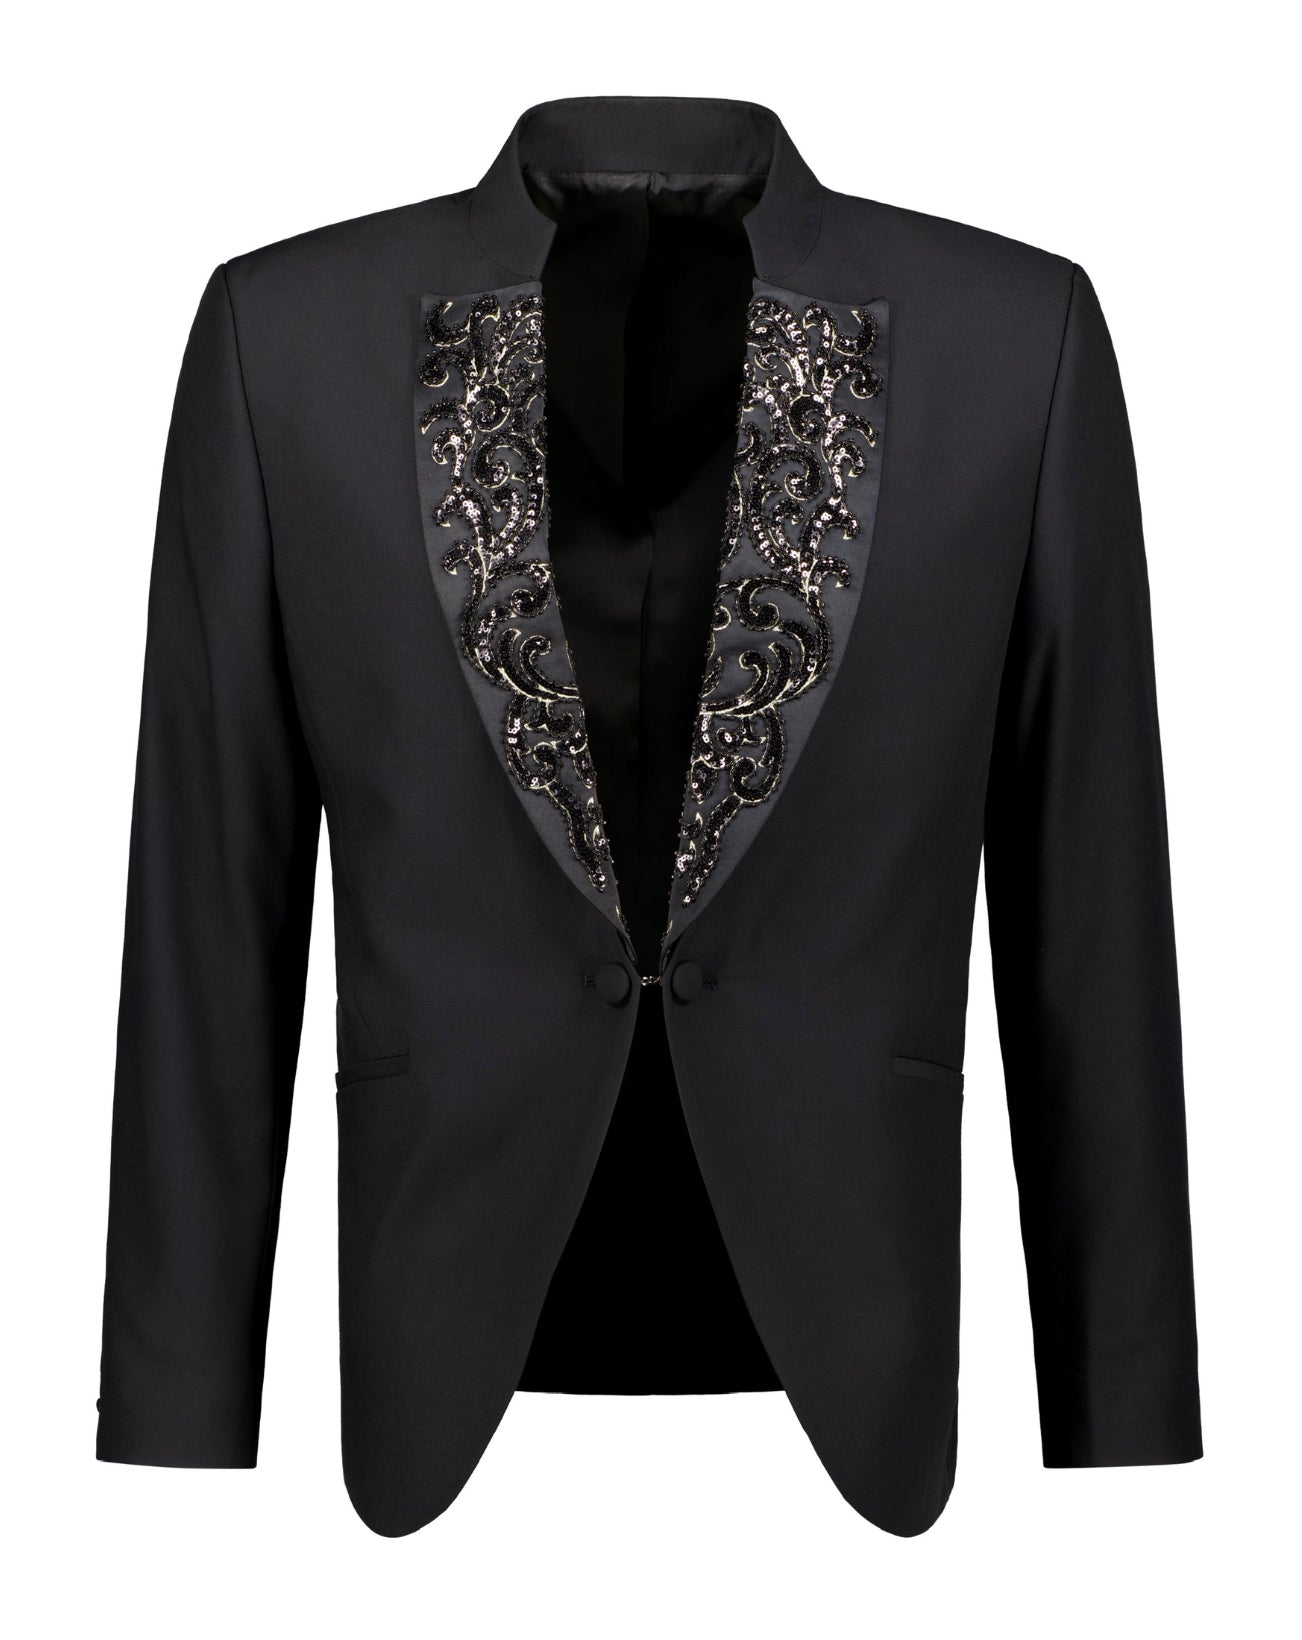 The Henrik Ceremony Suit - Suit by Urbbana